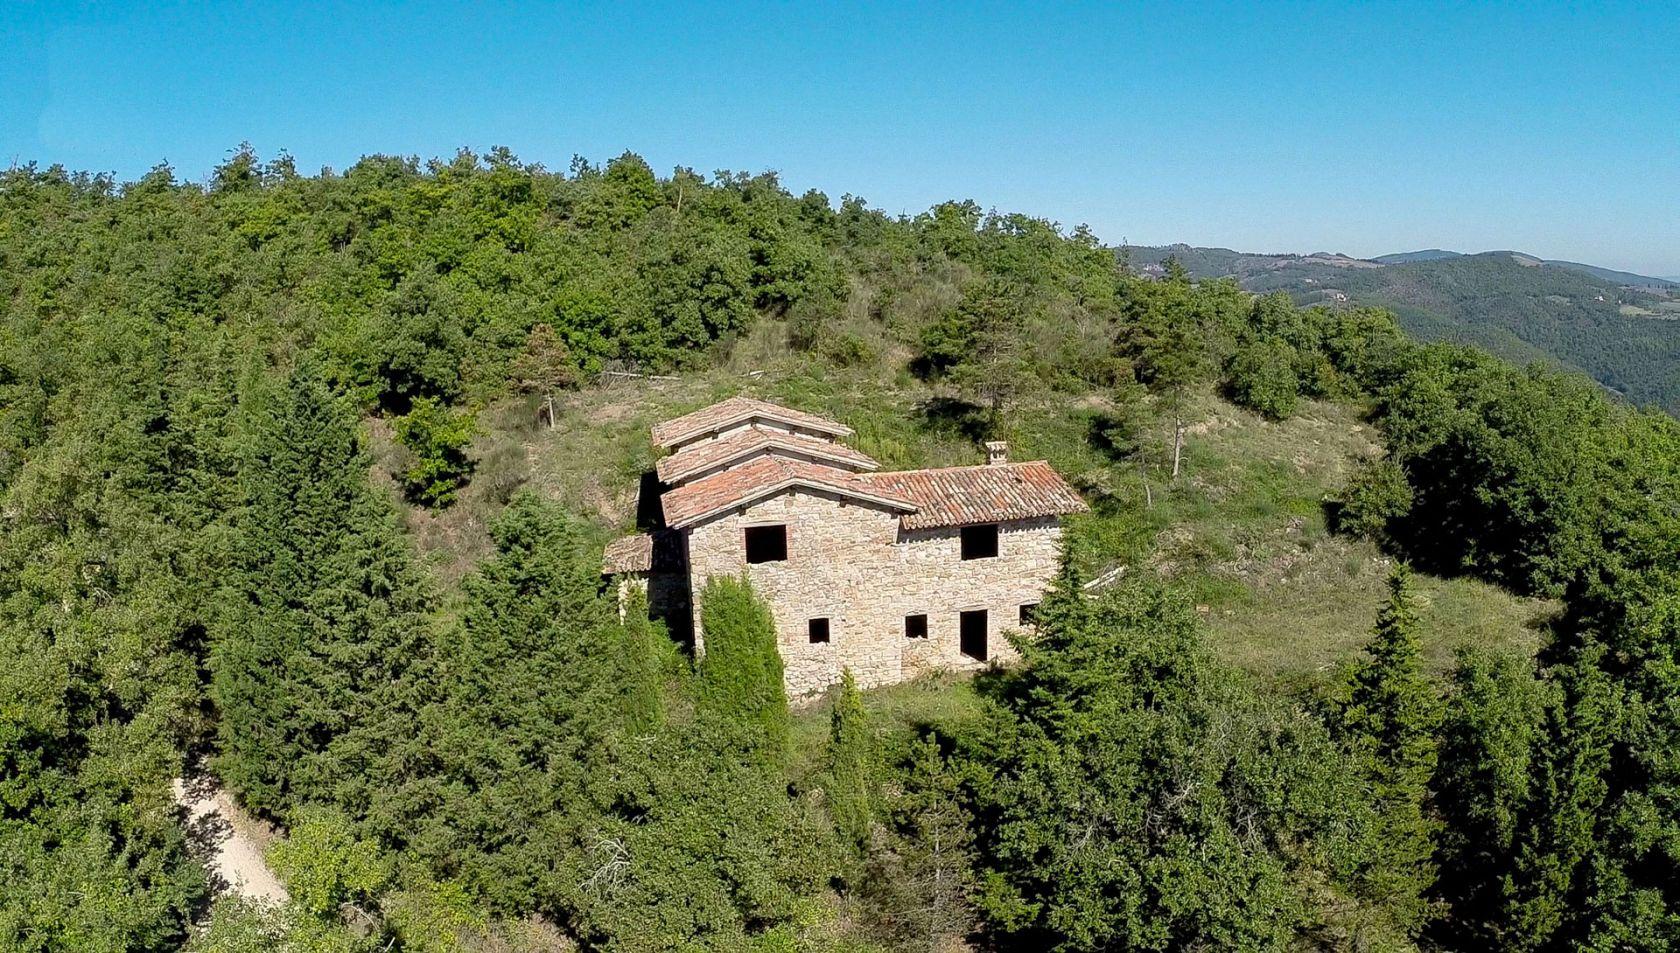 Toscana Immobiliare - Casale in pietra in vendita tra le colline umbre